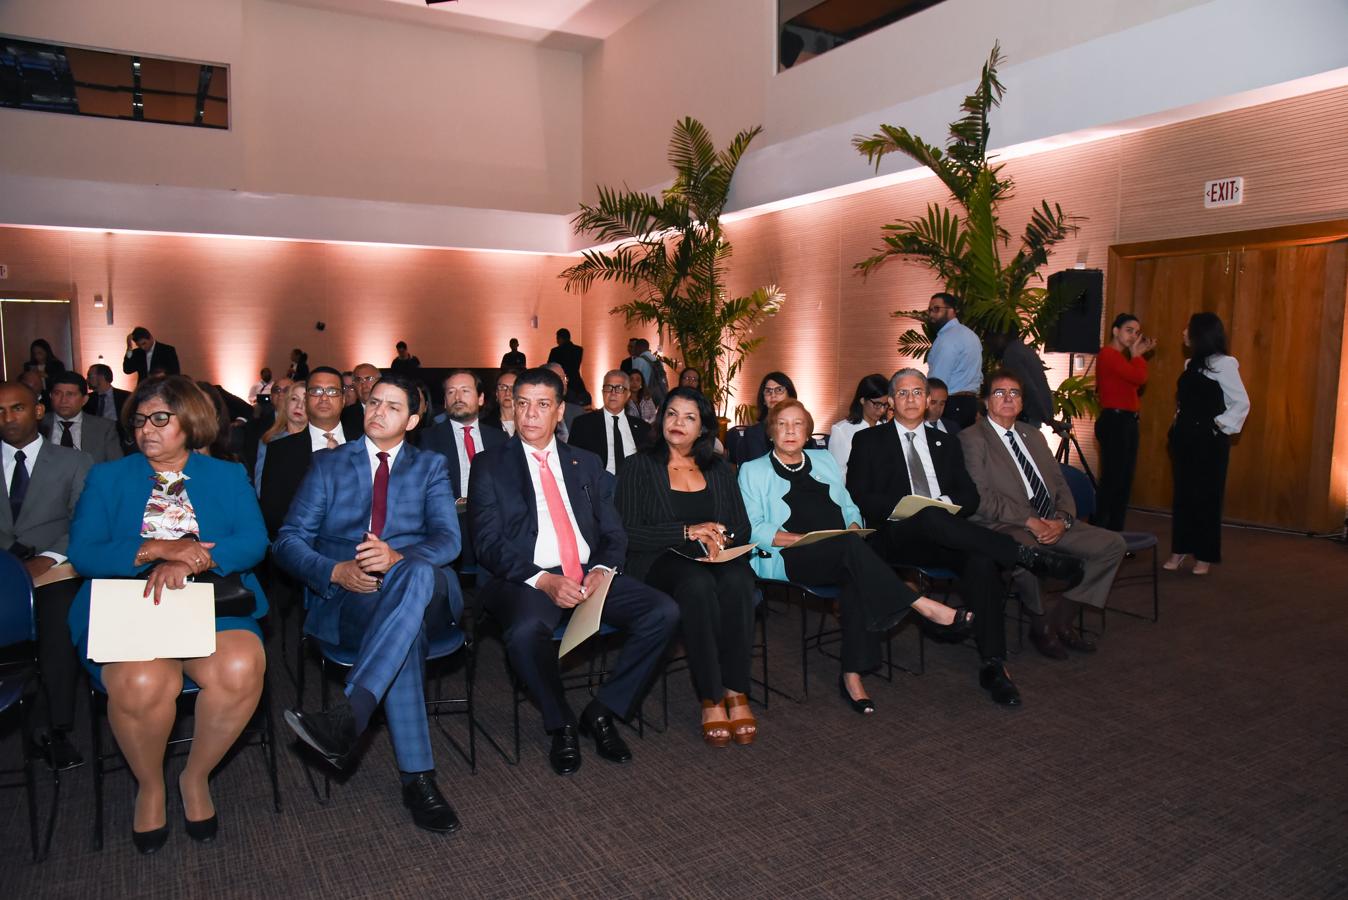 Foros ABC América. Imagen del público e invitados asistentes a las actividades de los Foros ABC América, que estos días se celebra en la República Dominicana.